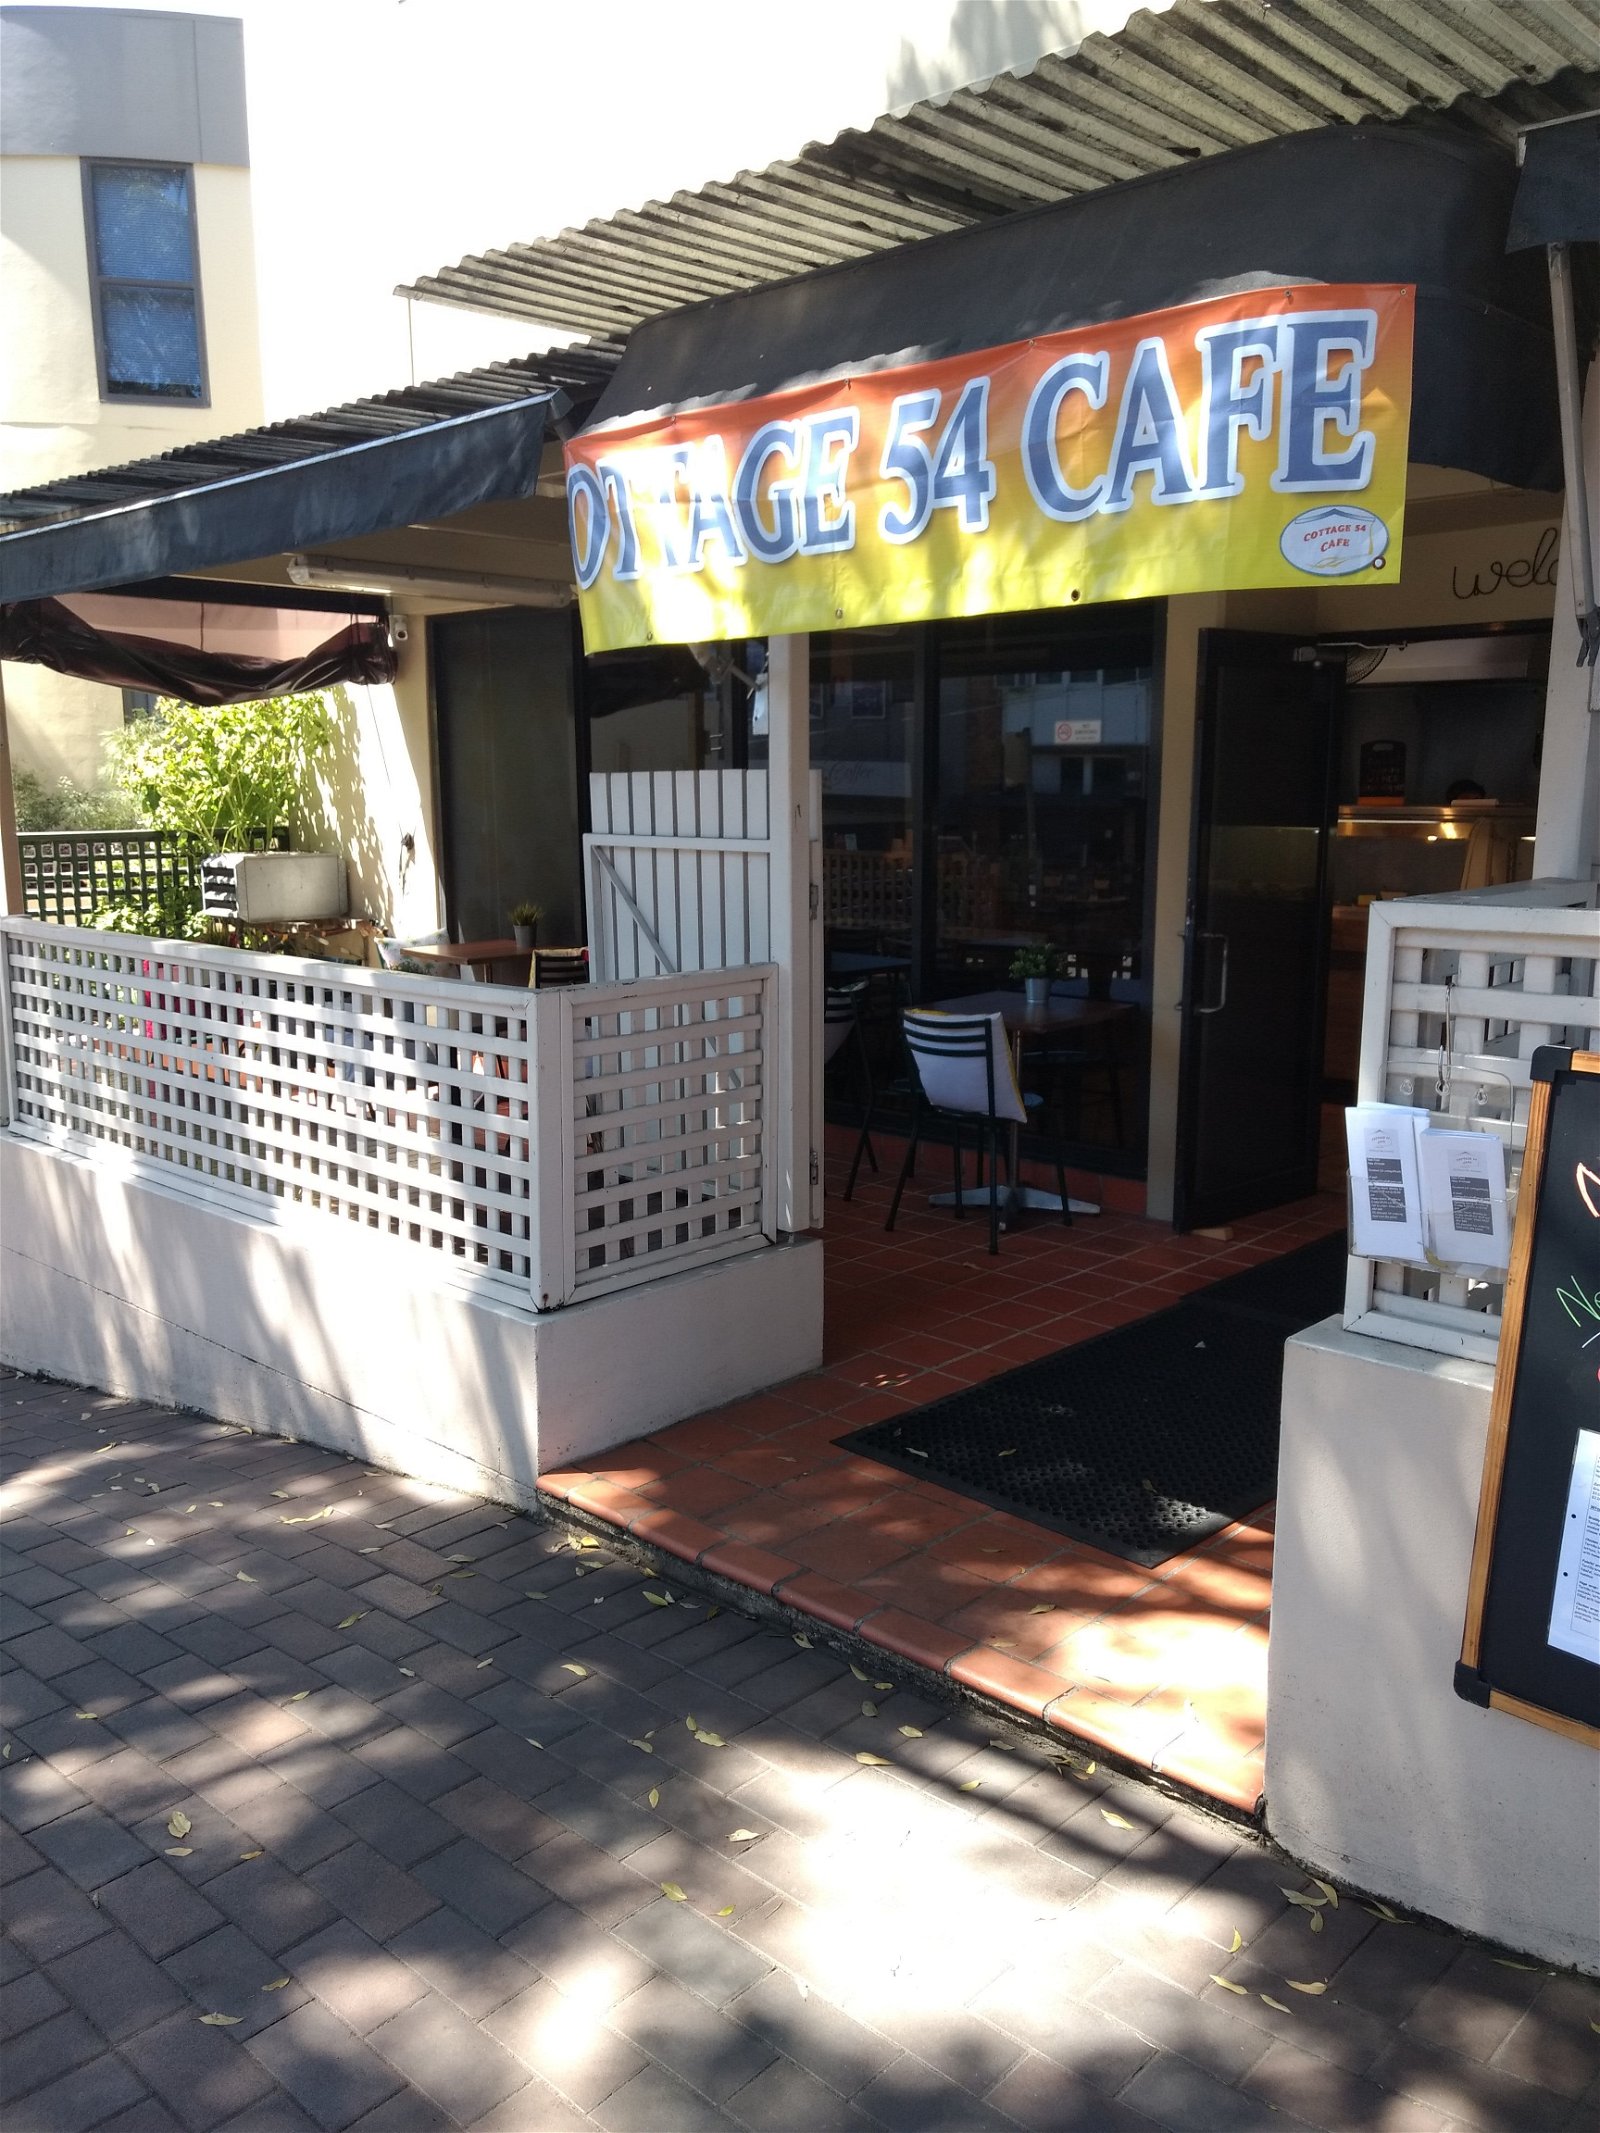 Cottage 54 Cafe